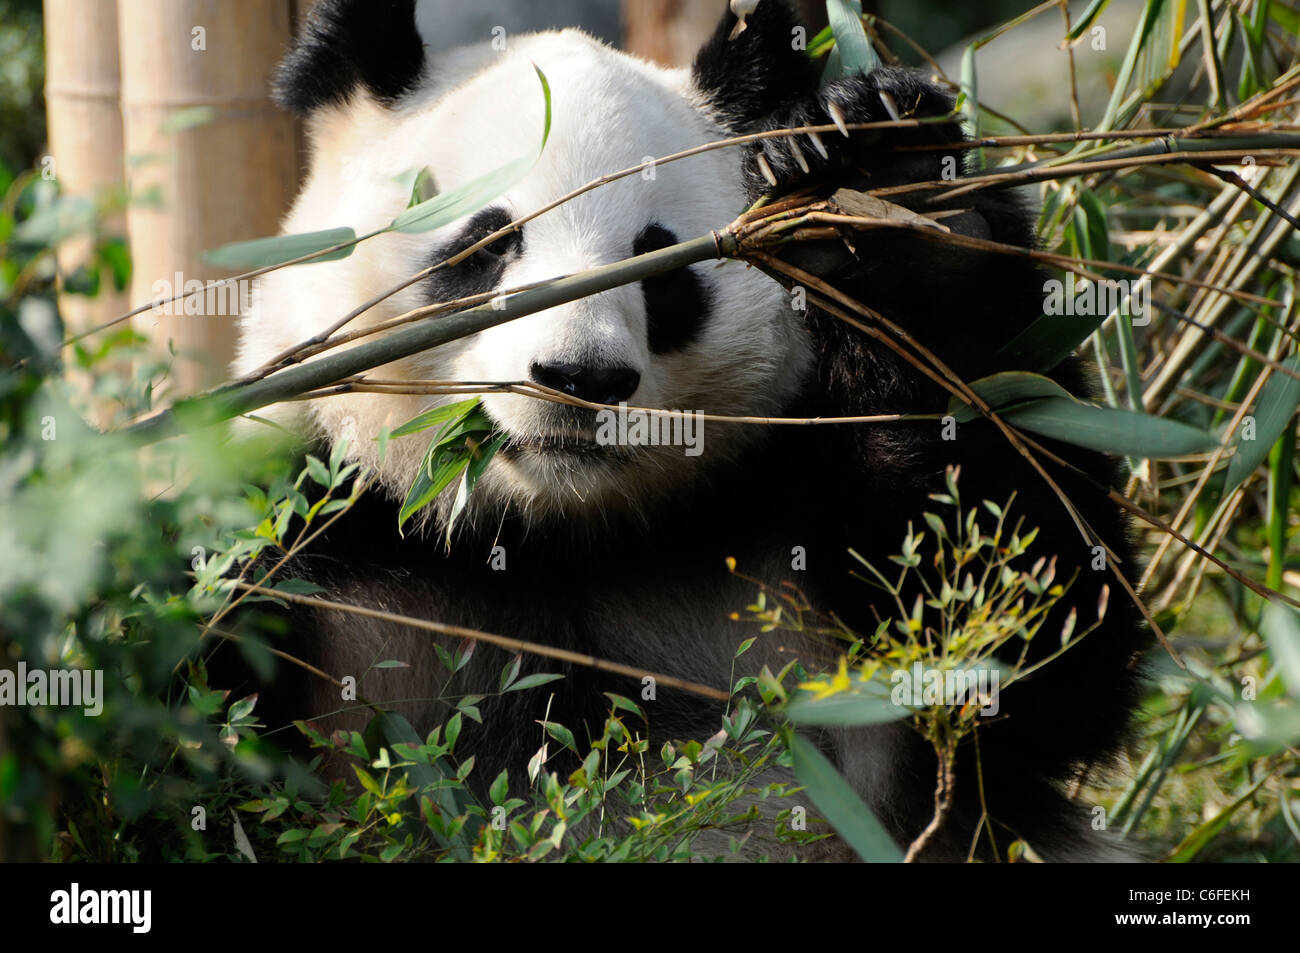 Panda géant (Ailuropoda melanoleuca) manger du bambou, de la province du Sichuan, Chine Banque D'Images